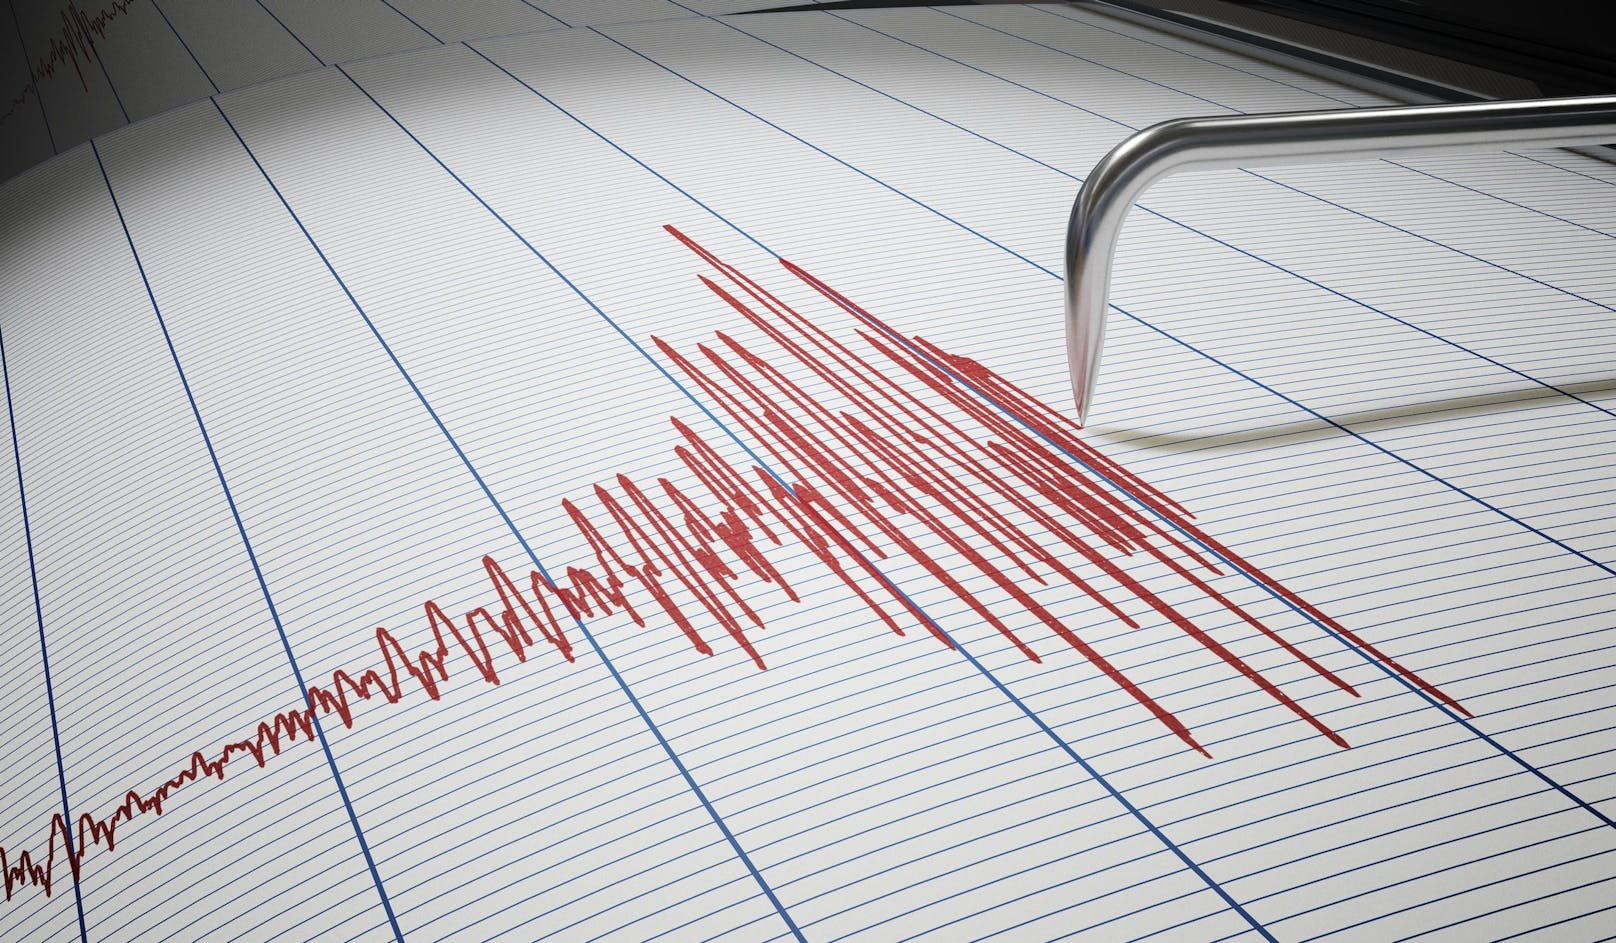 Einige Wiener schienen ein Erdbeben gespürt zu haben